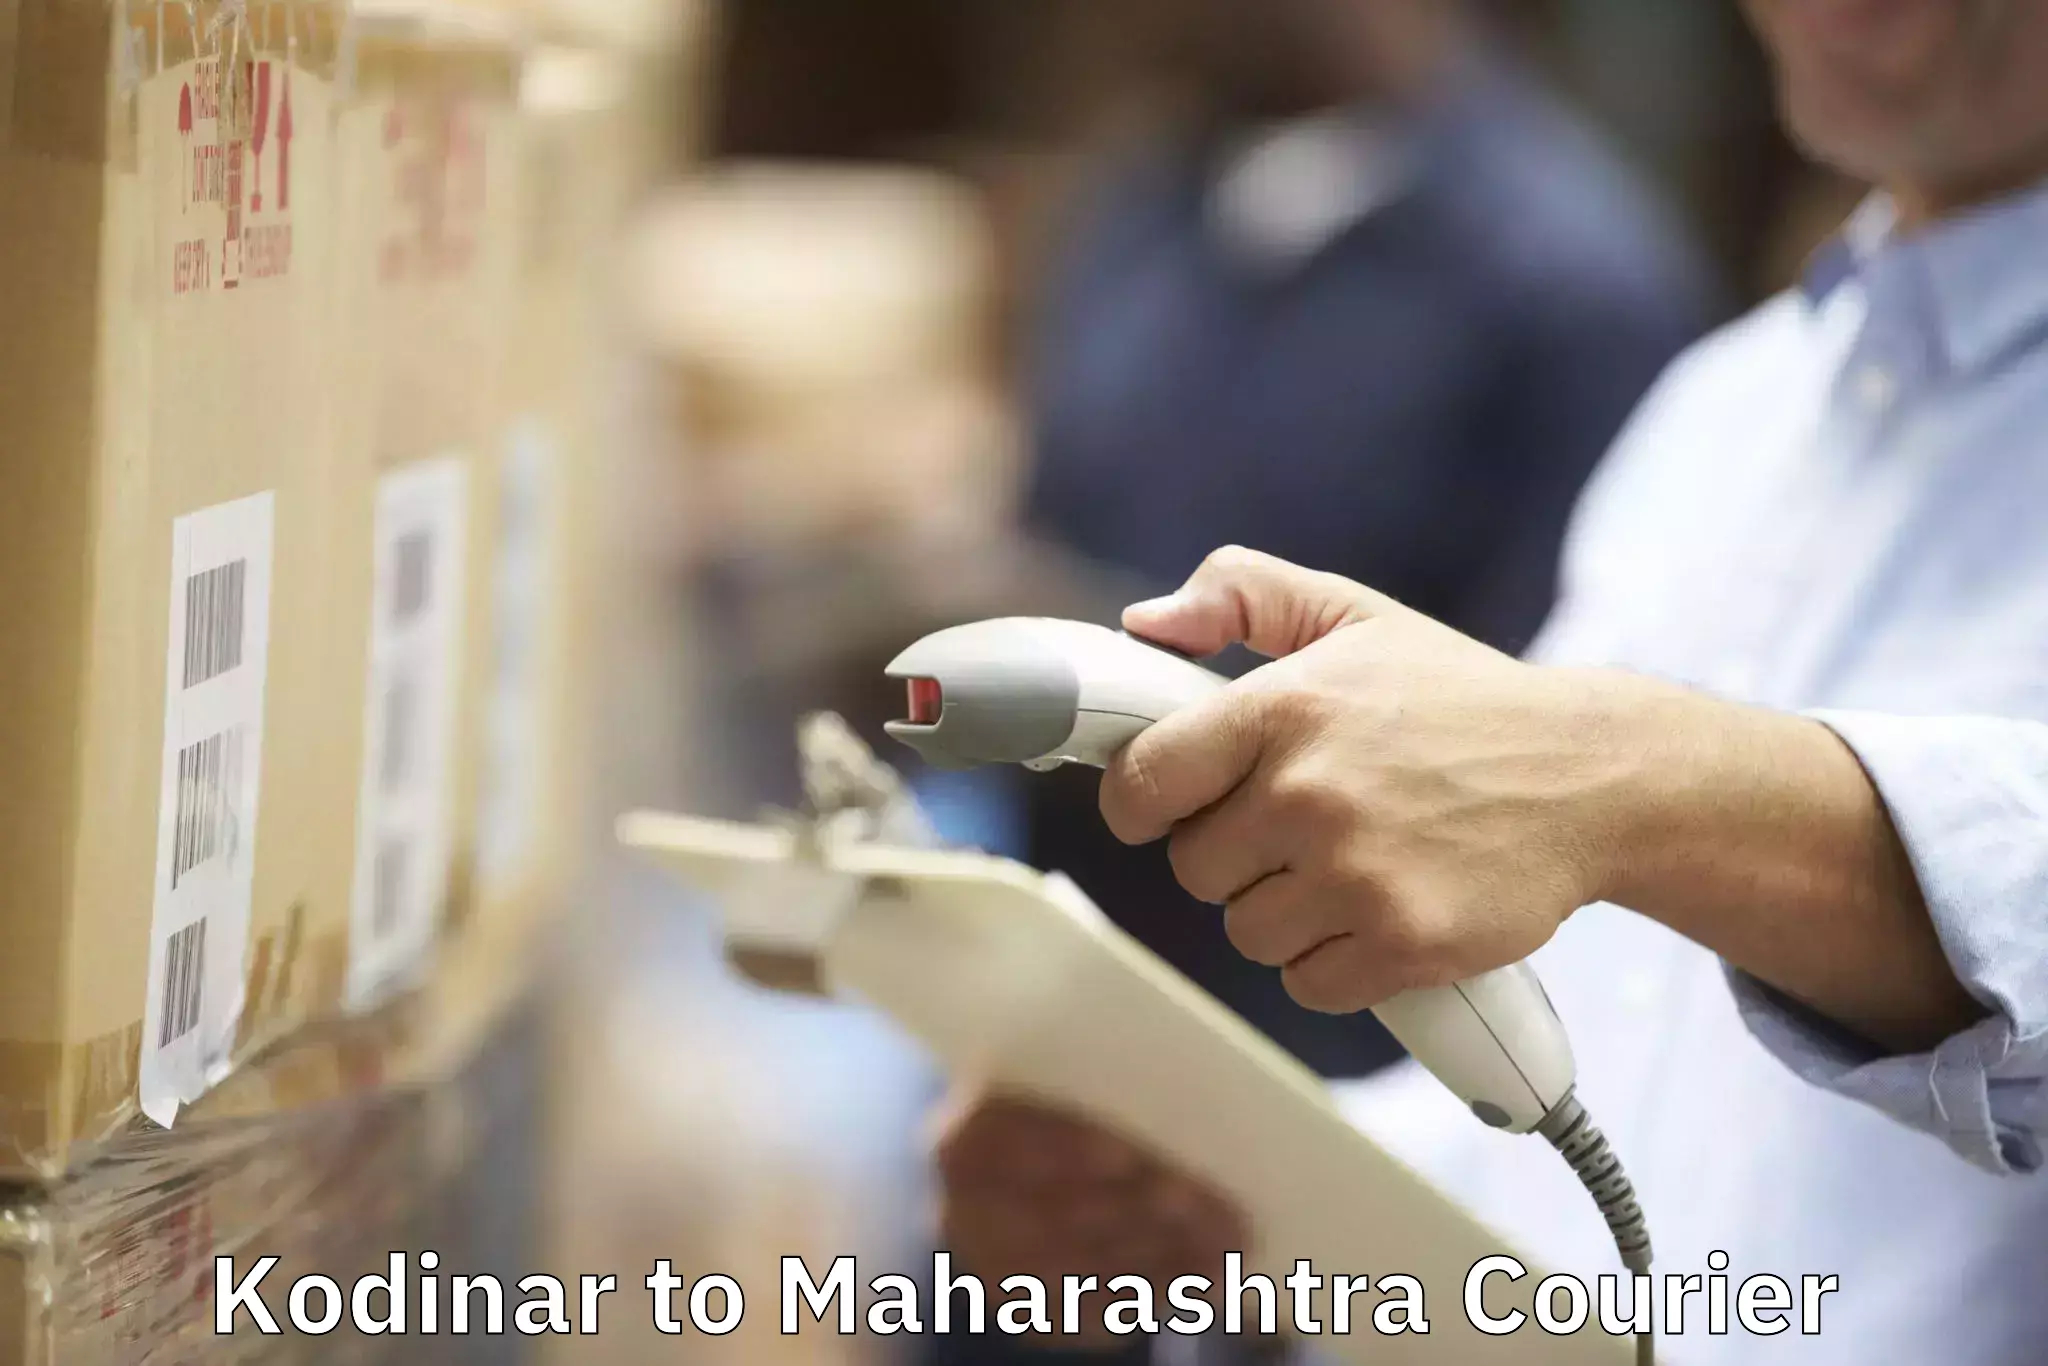 Professional movers in Kodinar to Maharashtra